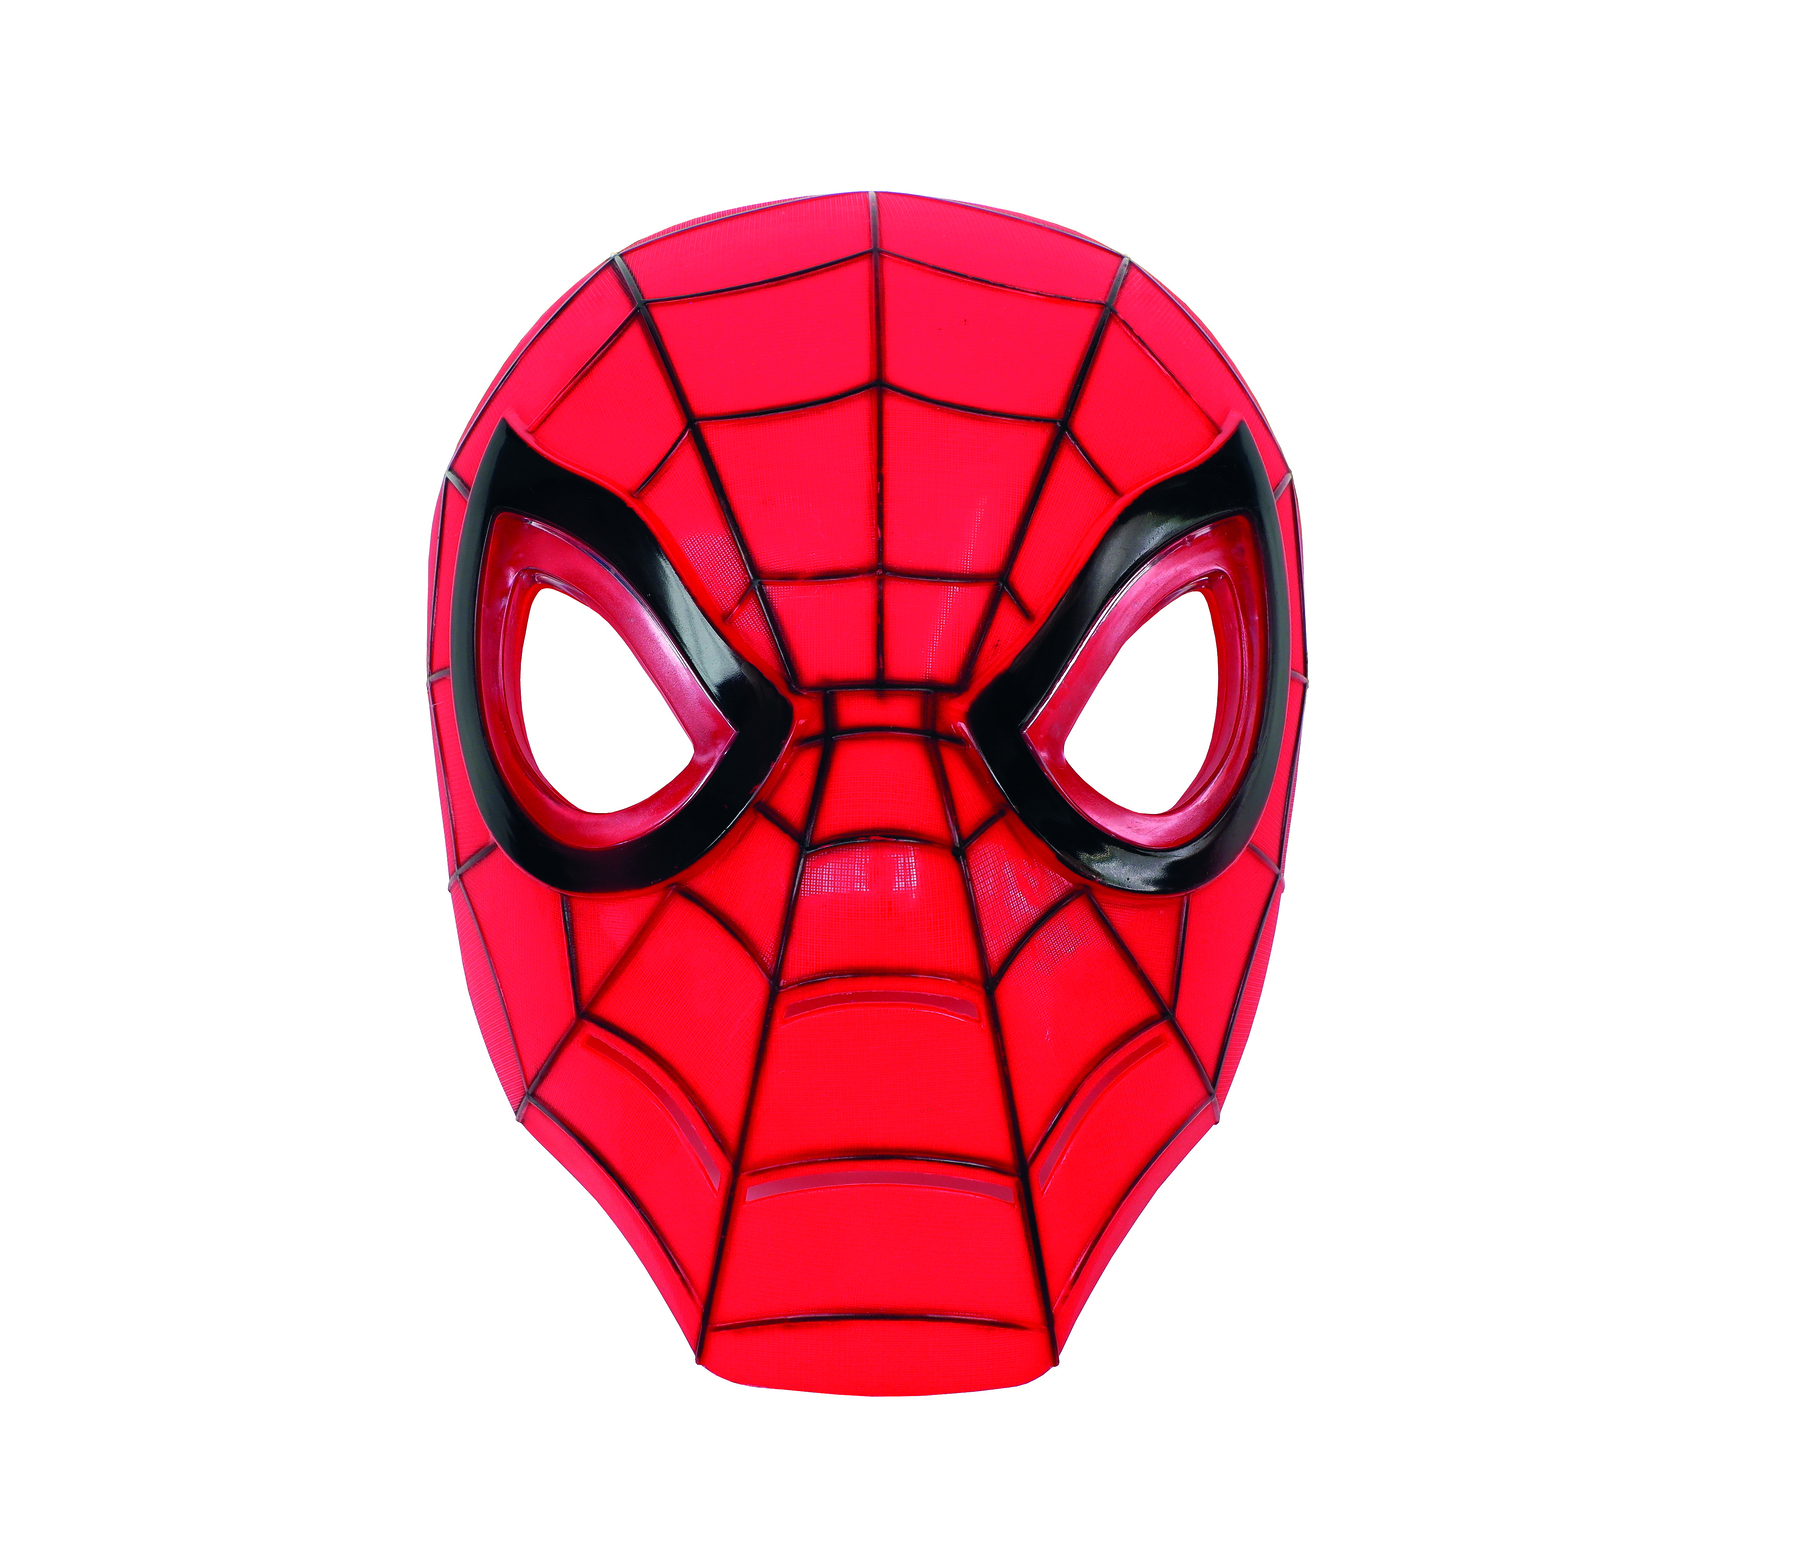 Fotografia. Uma máscara arredondada em vermelho, com linhas de teia de aranha em preto e olhos com o contorno da mesma cor.